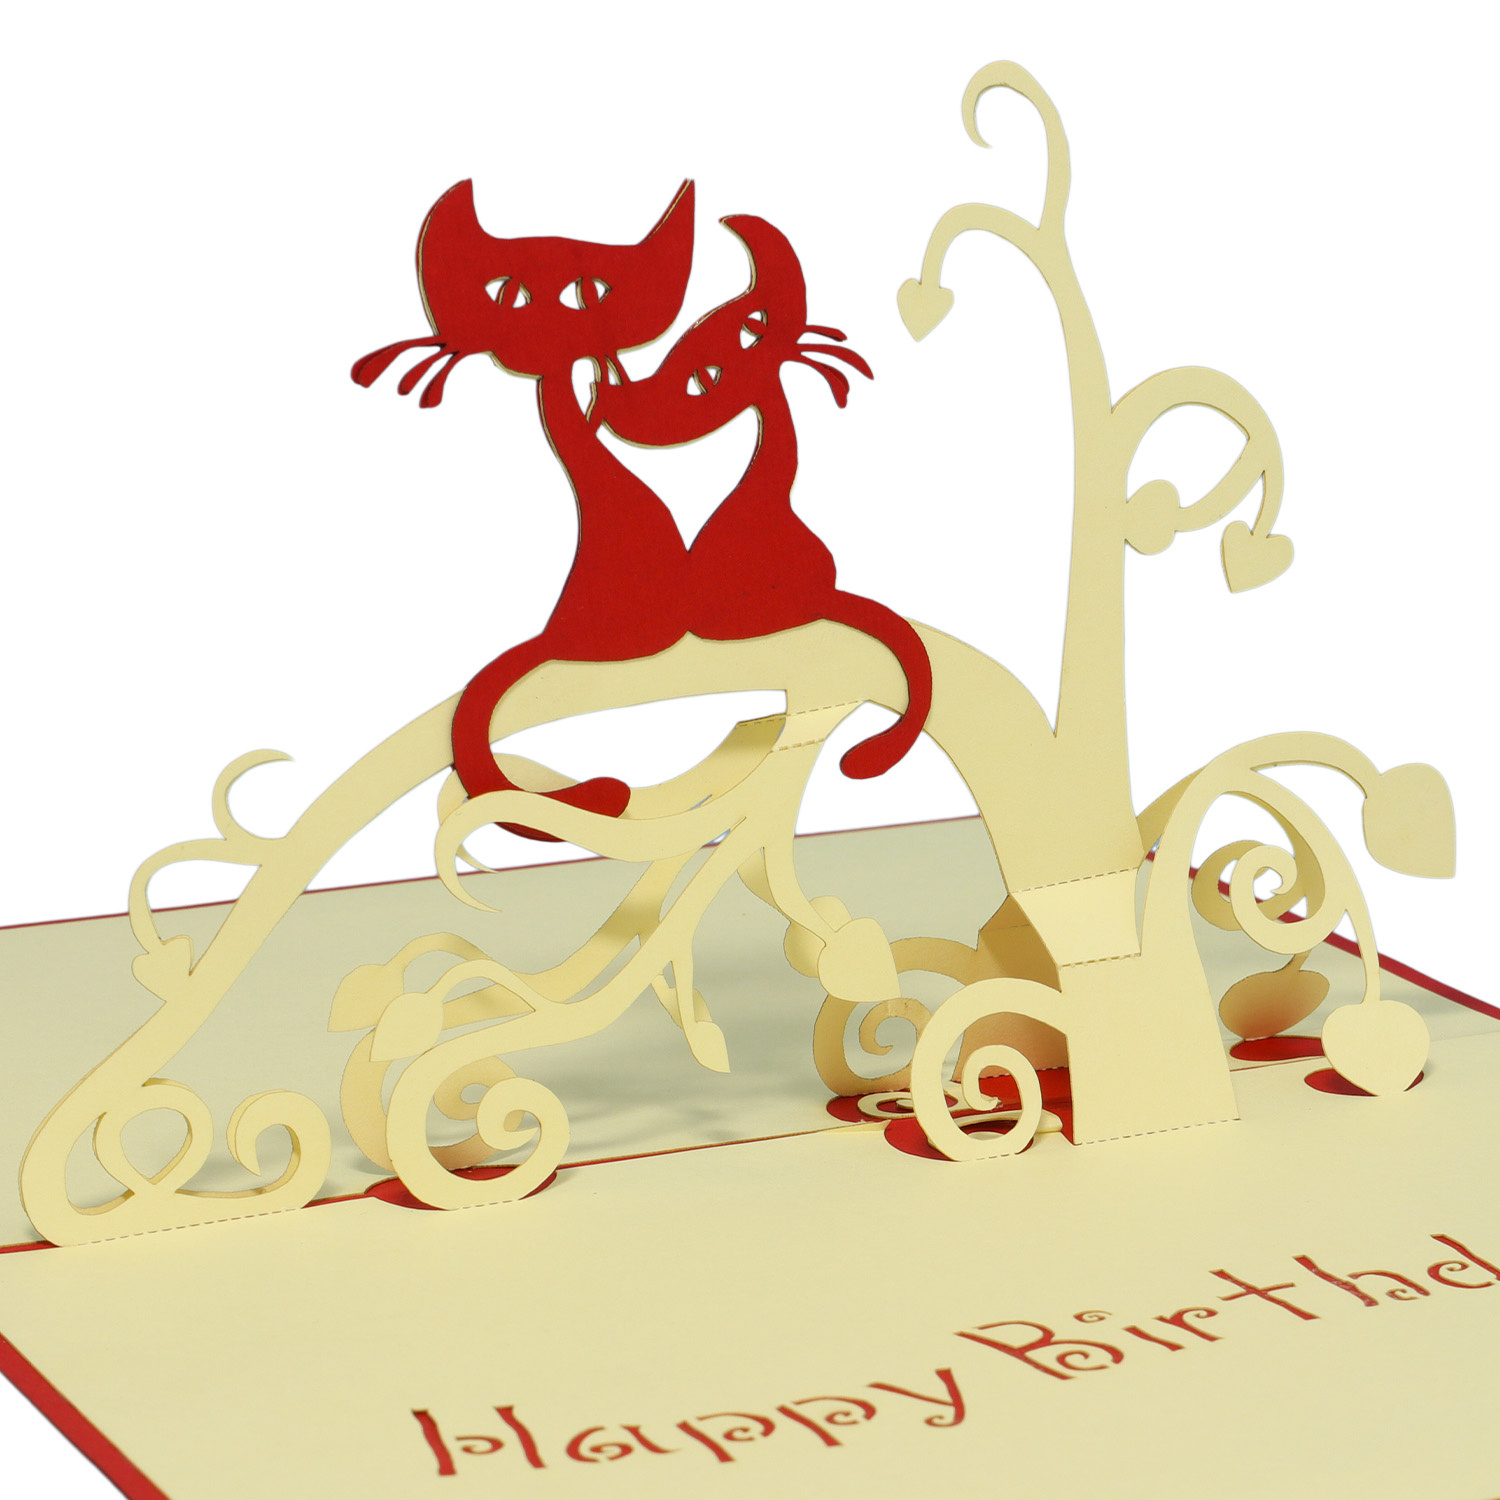 LINPOPUP Pop Up 3D Karte, Geburtstagskarte, Glückwunsch Gutschein, Katzen, LINPopUp®, N7